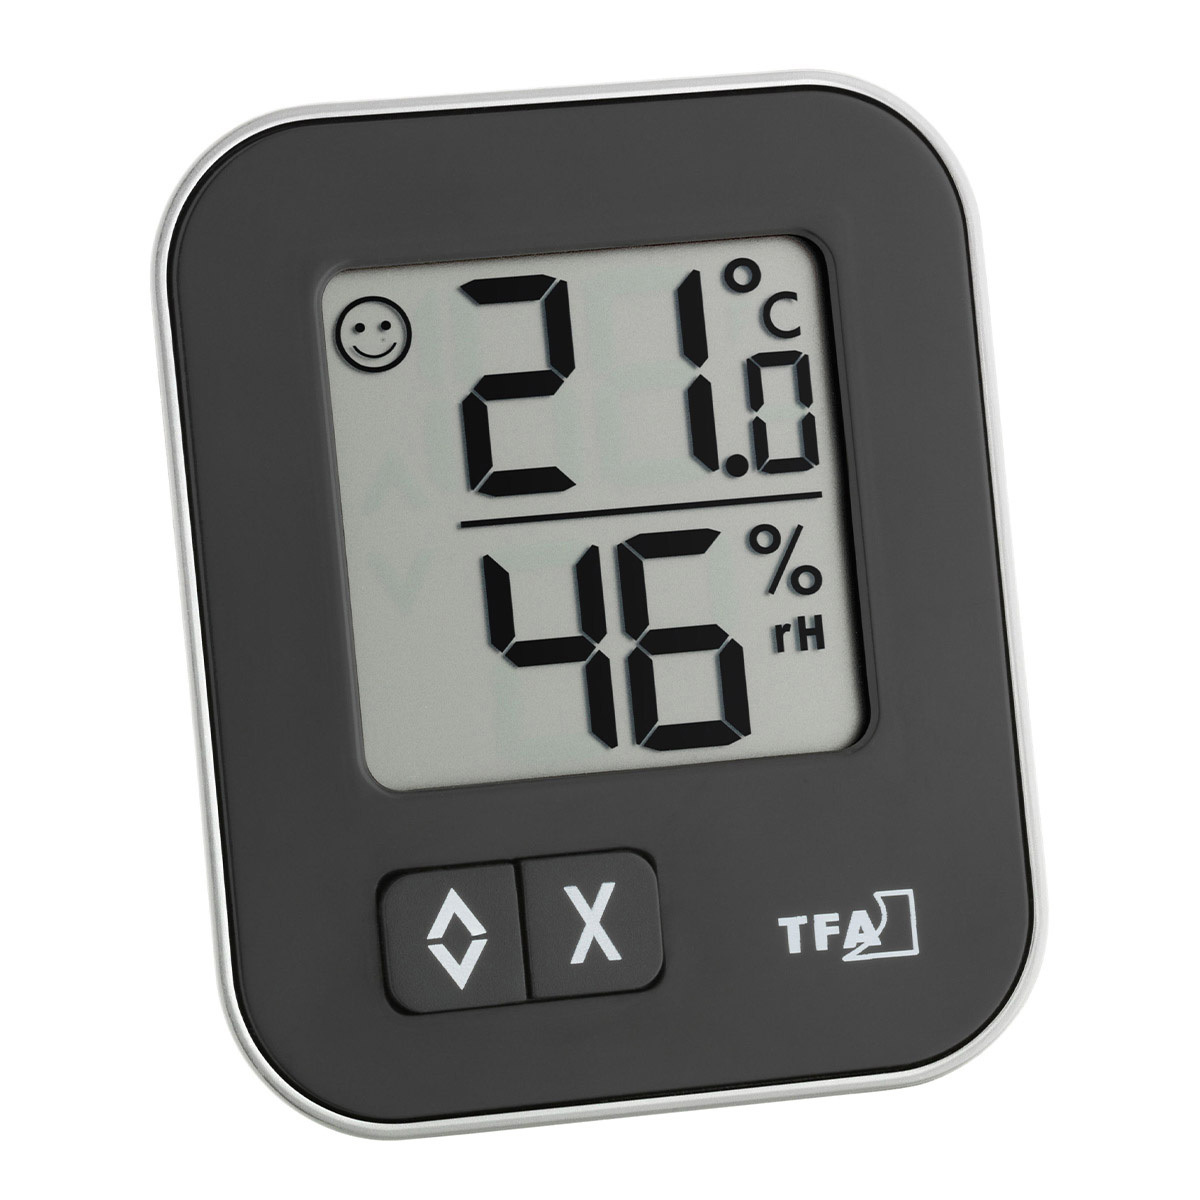 NEU Thermometer mini Hygrometer analog Luftfeuchtigkeit Raumklima innen  außen